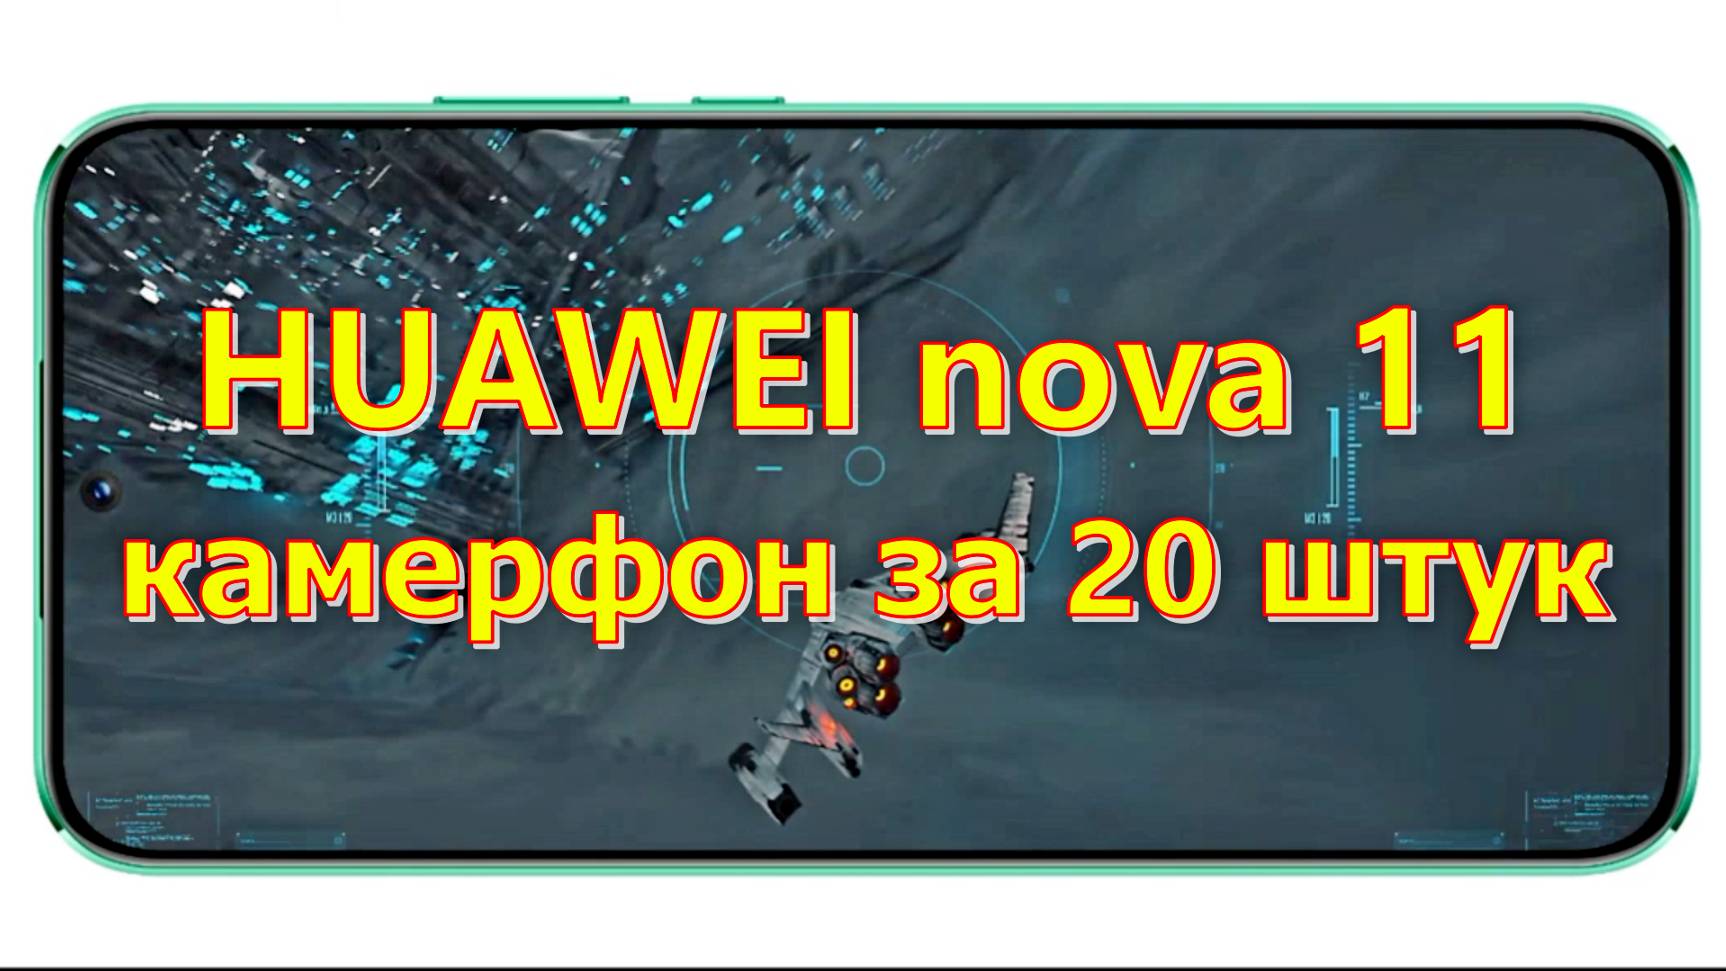 HUAWEI nova 11 — камерфон за 20 штук